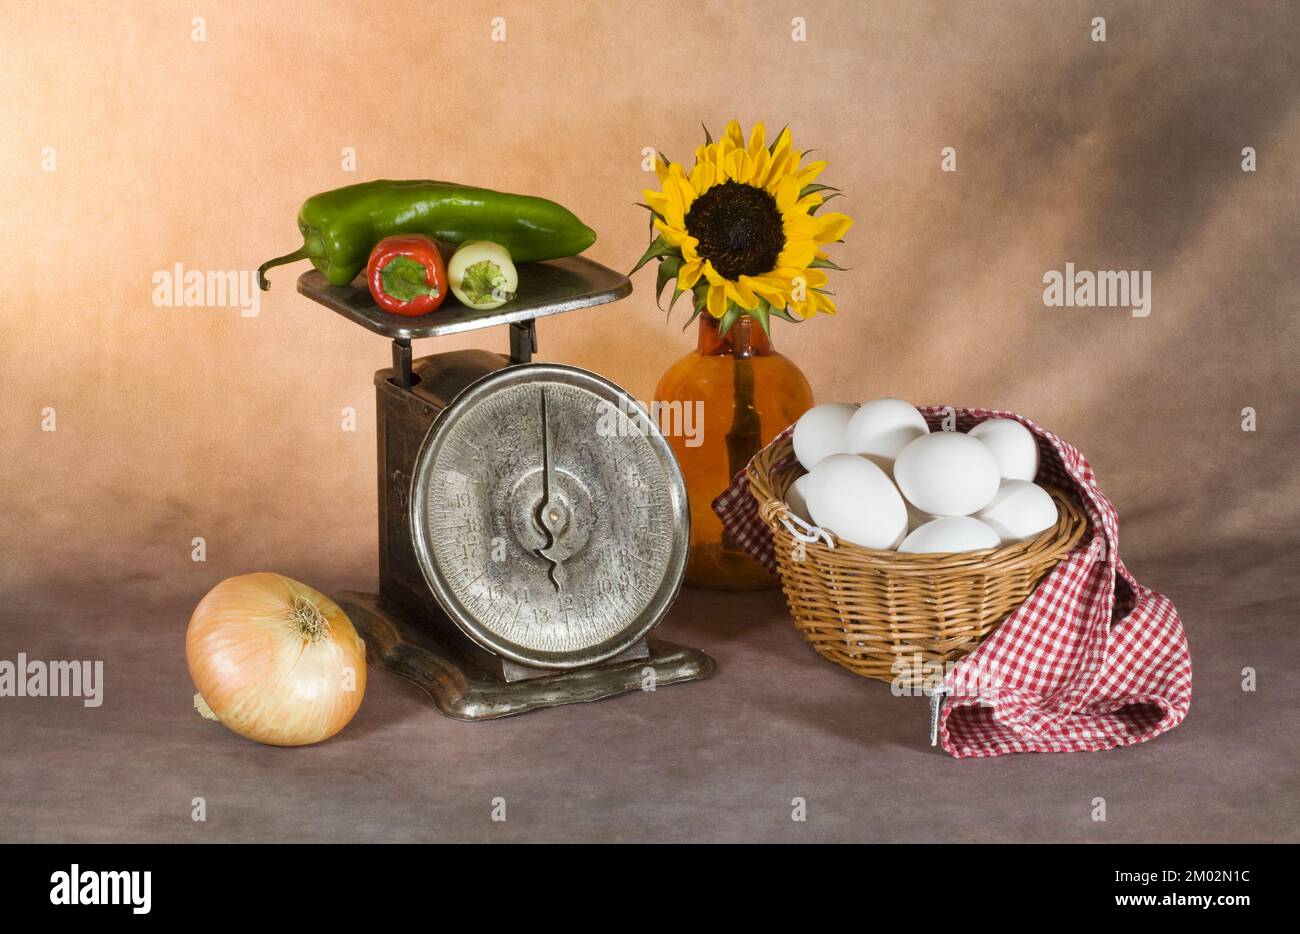 Fotografía artística de una docena de huevos en una cesta, verduras a una escala antigua y un girasol en una botella vintage. Foto de stock